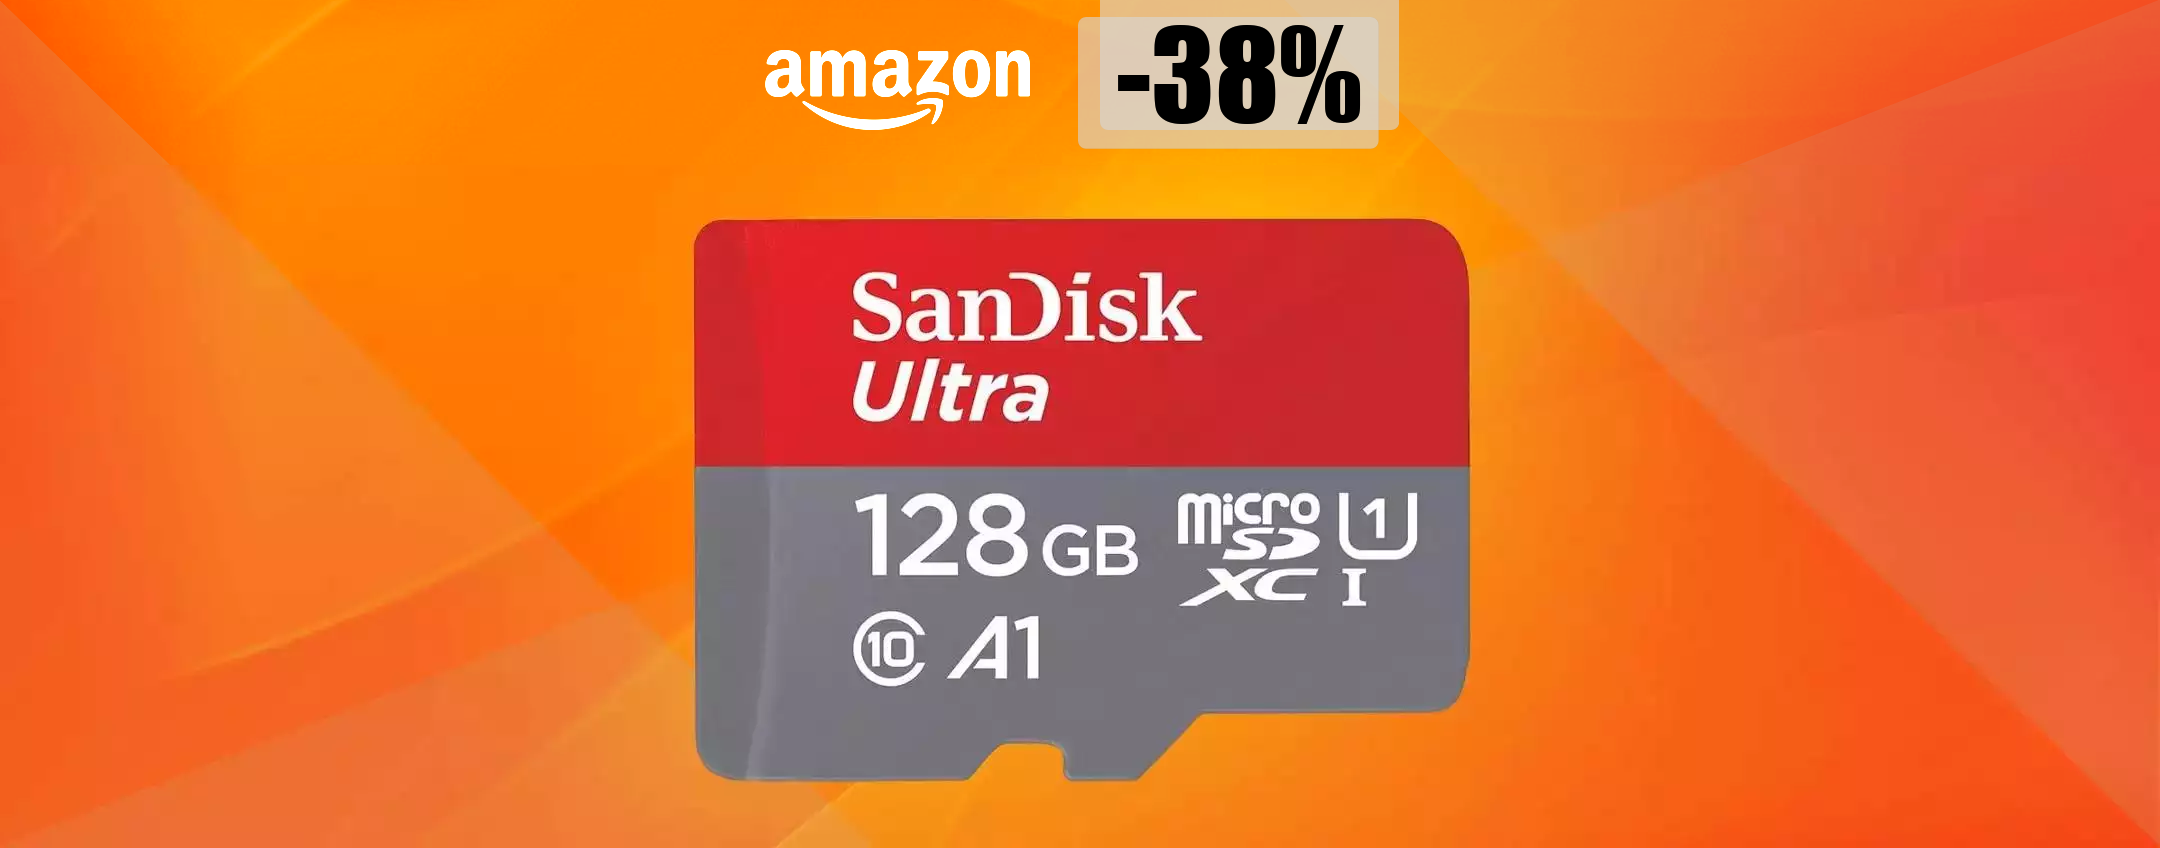 MicroSD 128GB, il PREZZO PRECIPITA su Amazon: ora bastano 18 euro